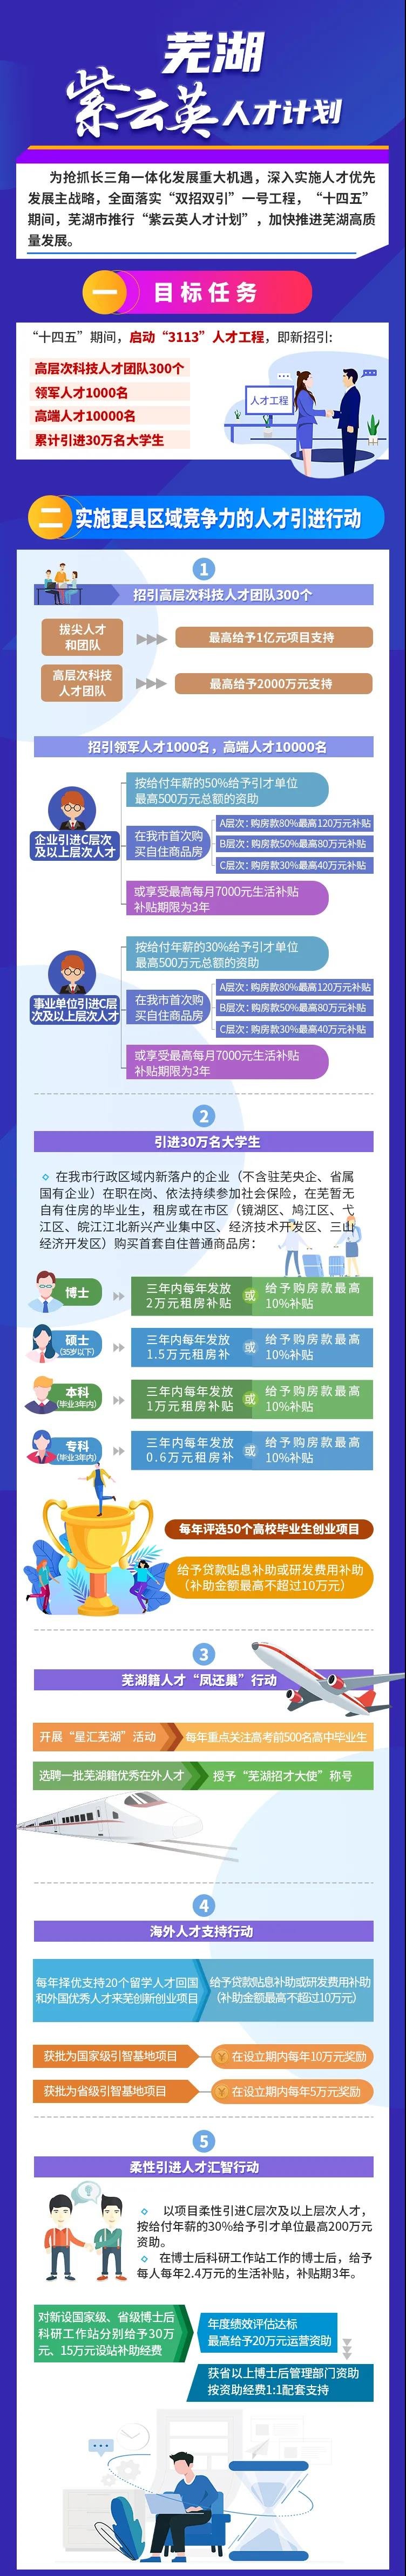 芜湖“紫云英人才计划”专科以上学历或可享受购房款10%补贴